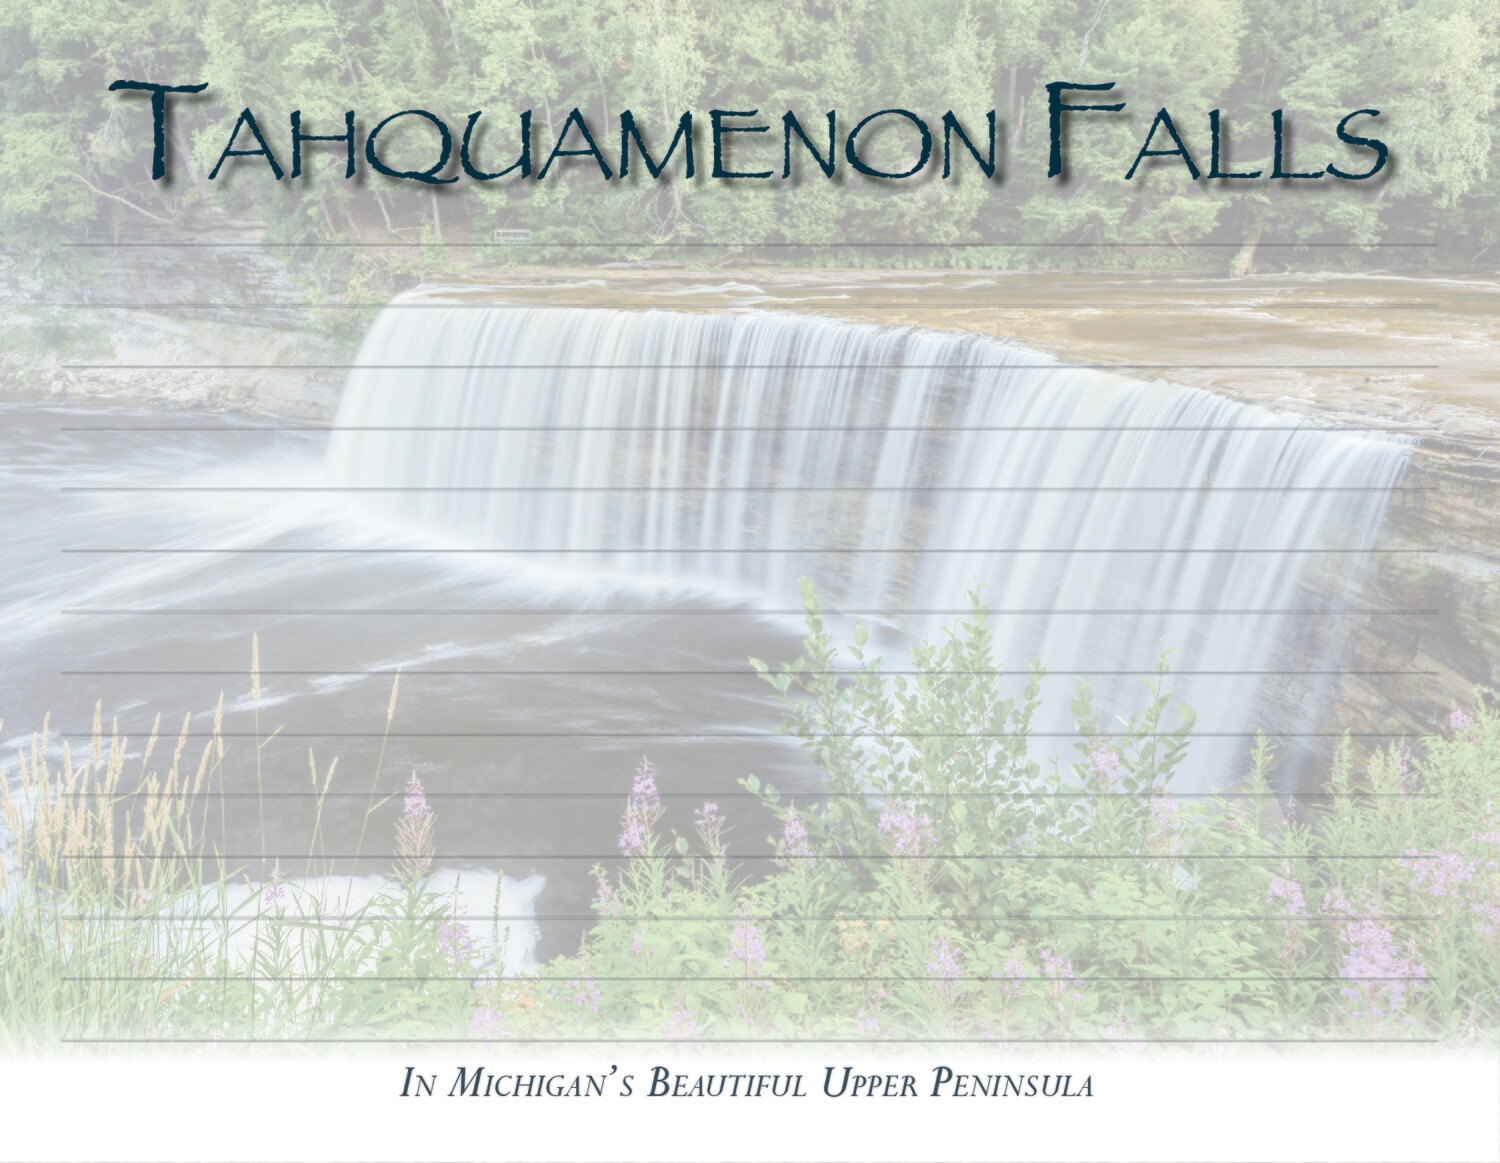 TAHQUAMENON FALLS